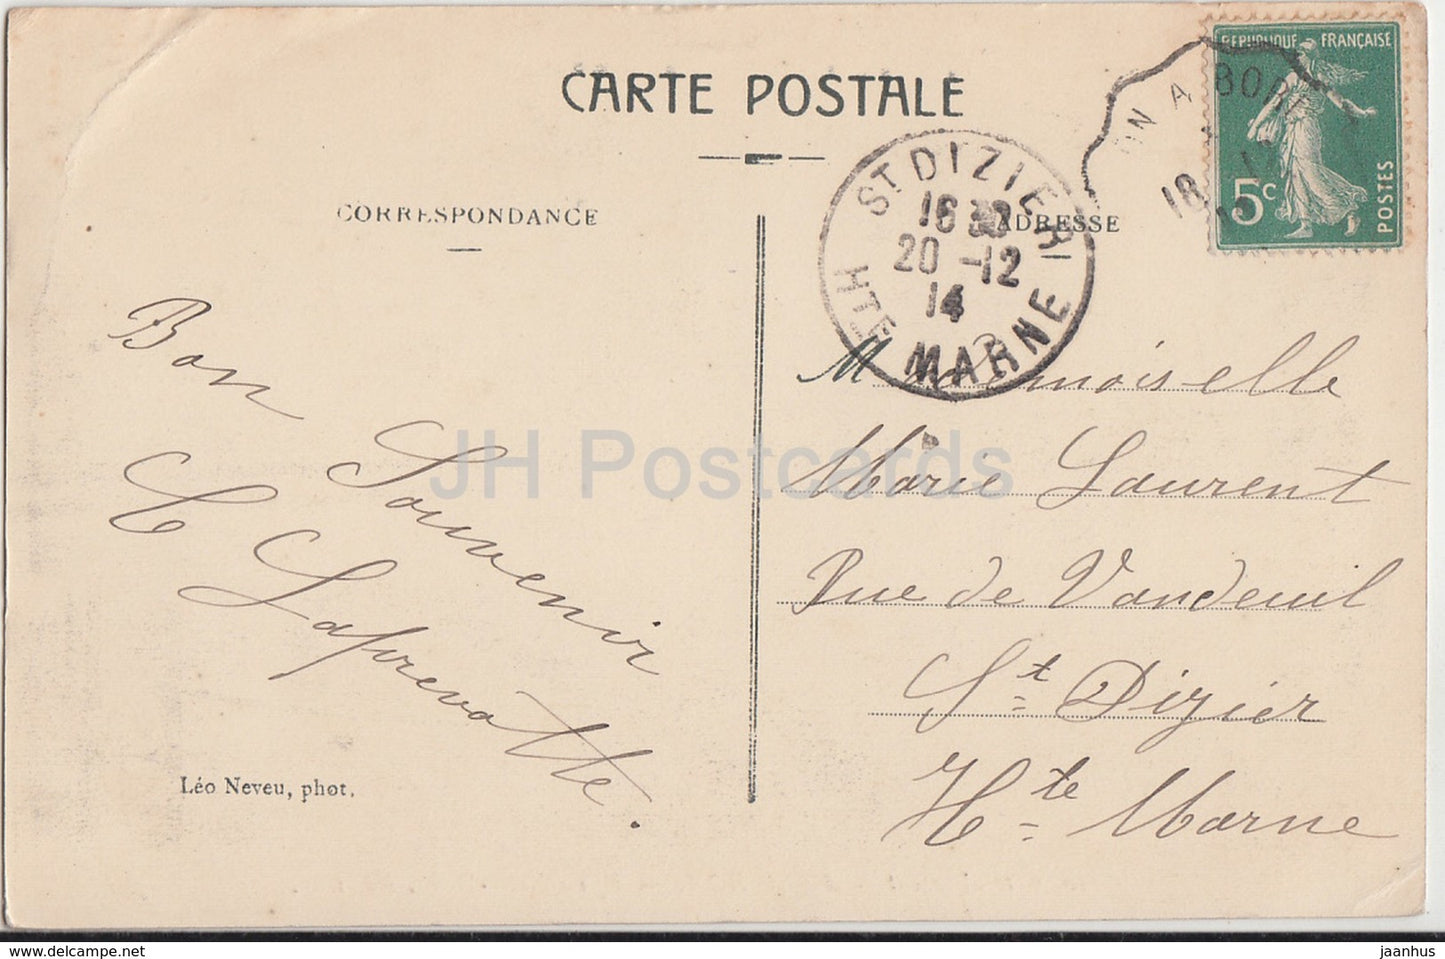 Arcachon - Eglise Notre Dame interieur - Cote d'Argent - church - 110 - 1914 - old postcard - France - used